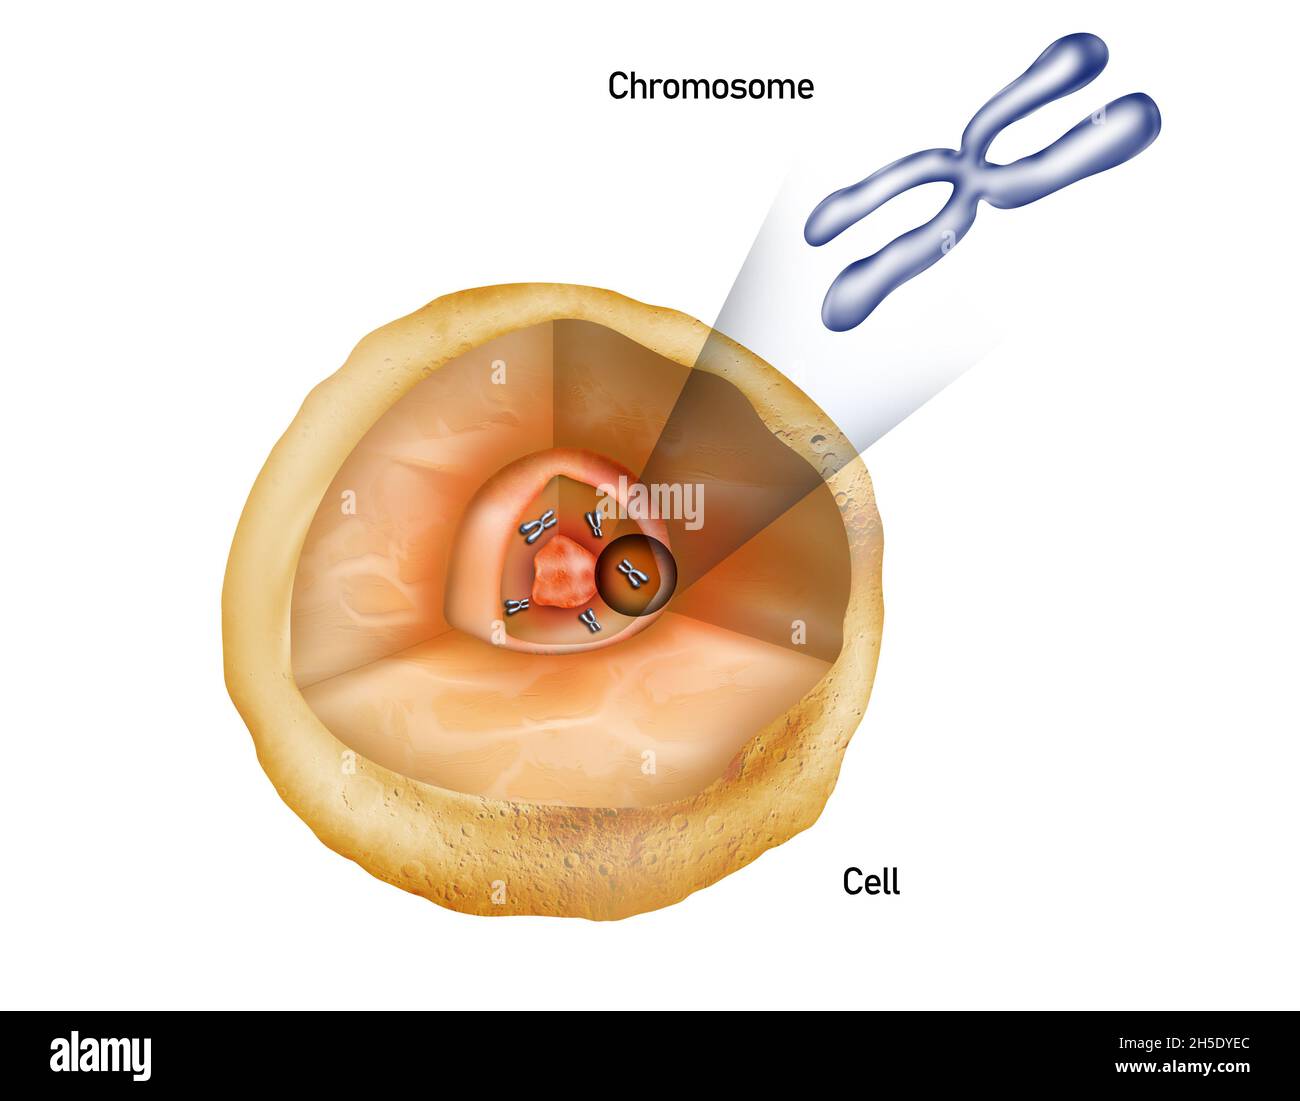 Cromosomas en el núcleo de una célula, estructura celular con ilustración cromosómica Foto de stock